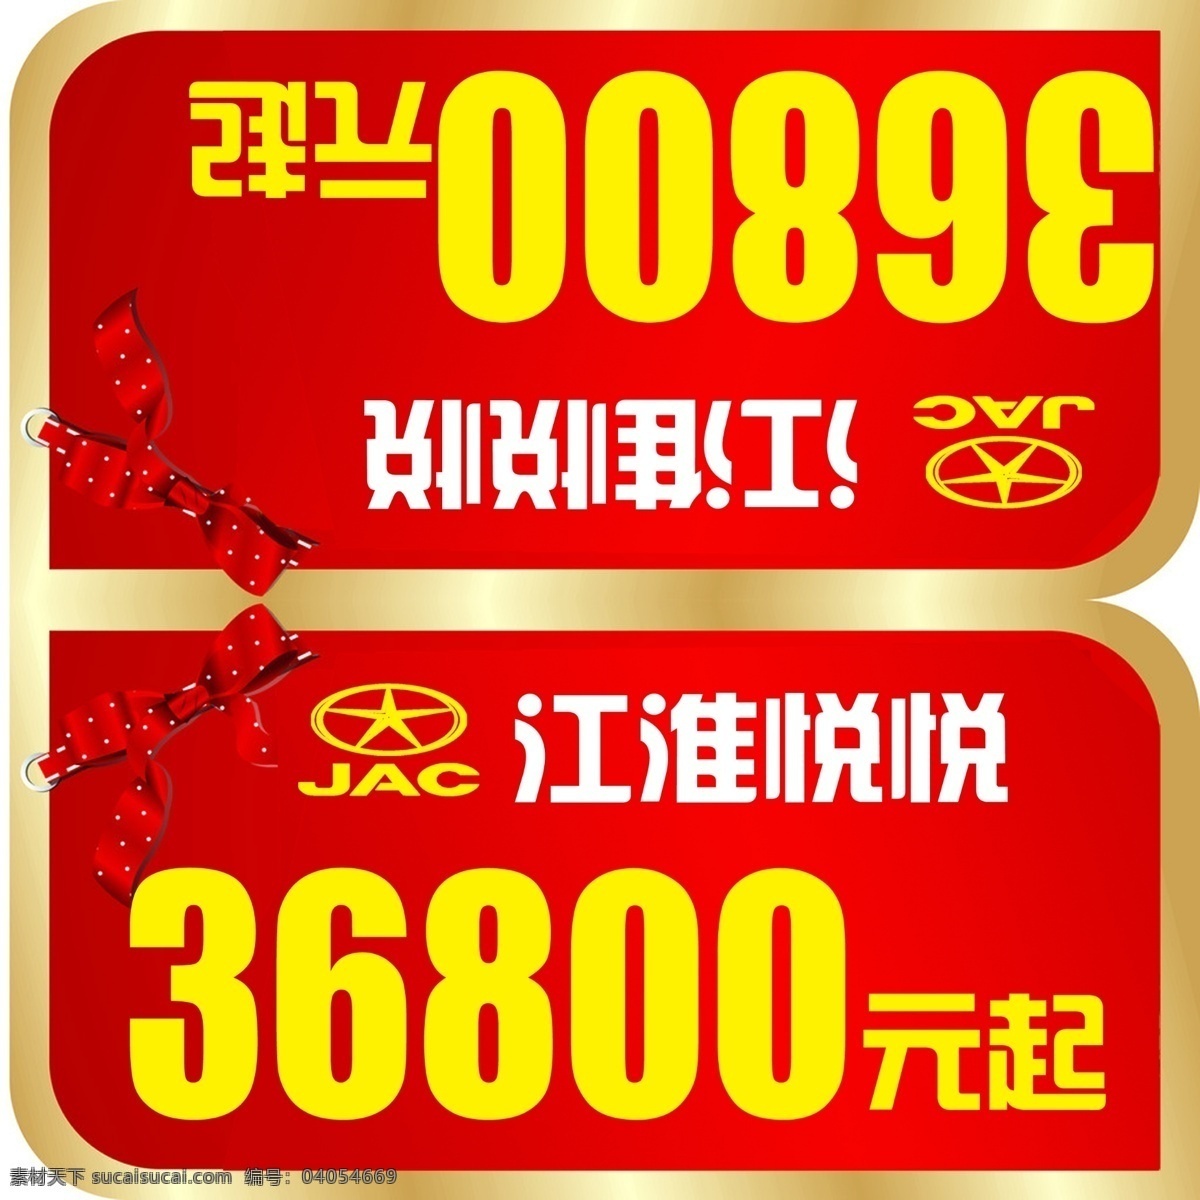 江淮 汽车 车顶 牌 车顶牌 汽车促销 价格牌 价格车顶牌 国内广告设计 广告设计模板 源文件